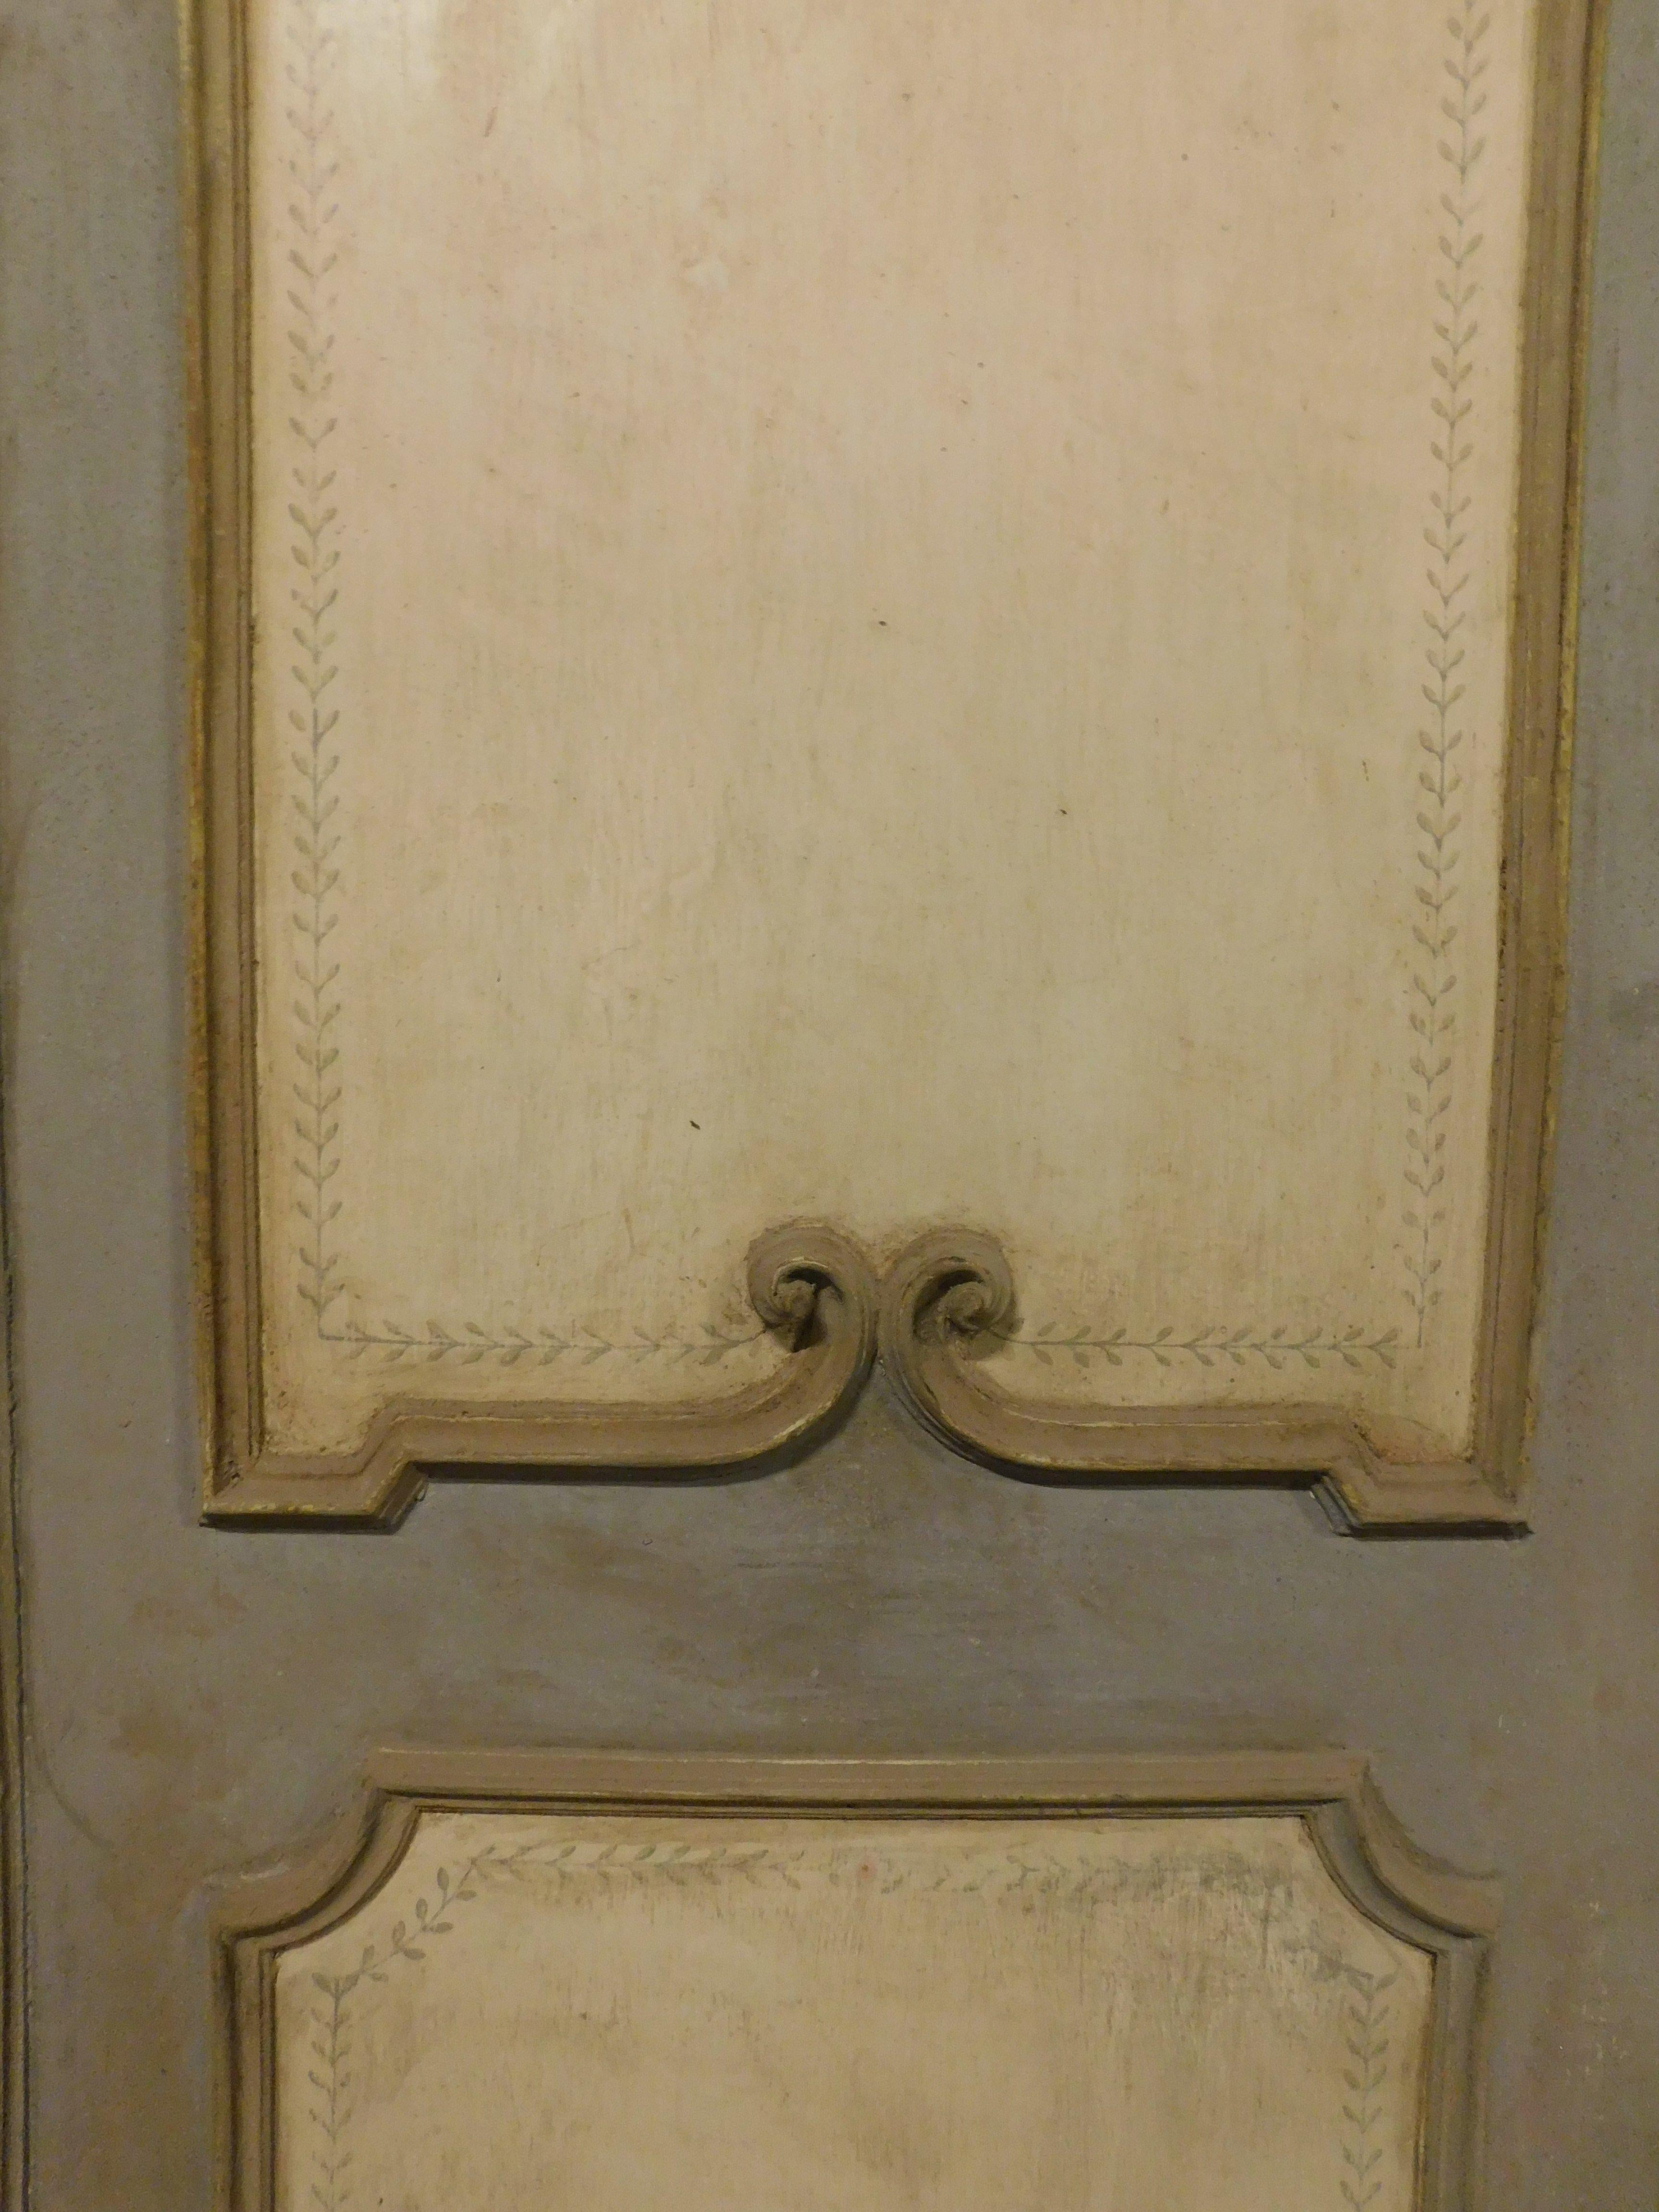 door complete with frame